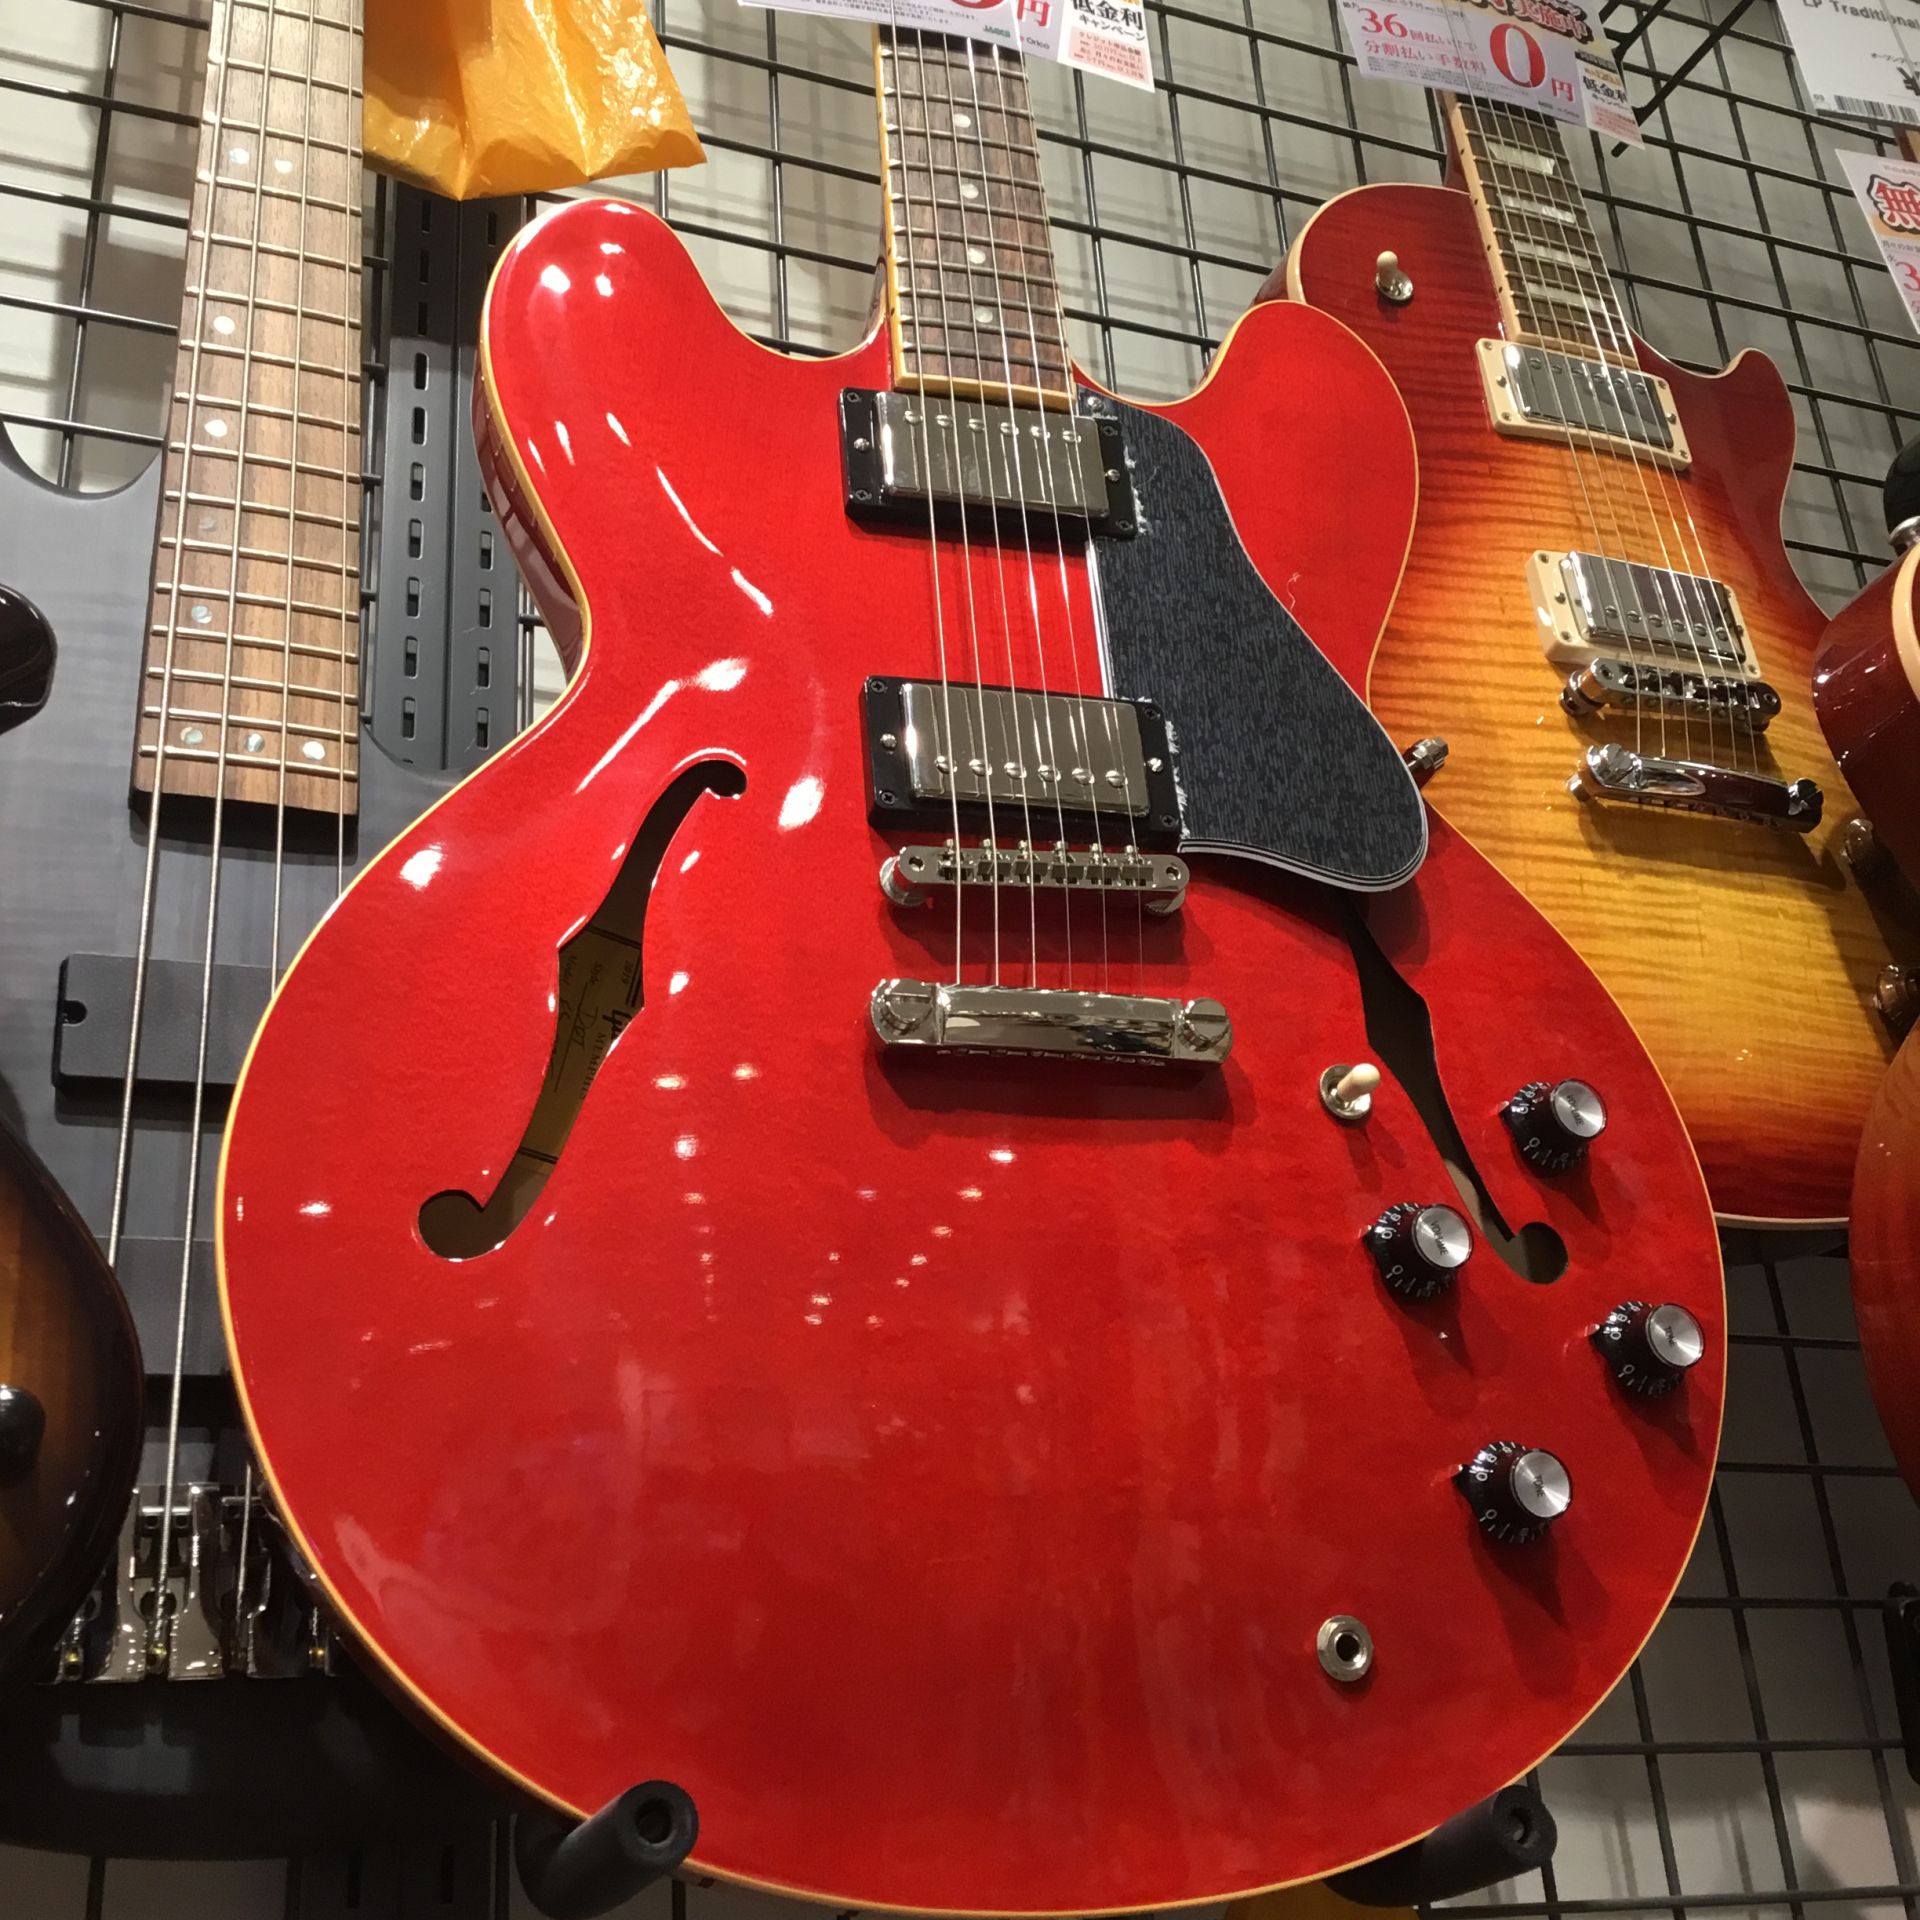 GibsonのES-335 DOTが当店にも入荷しました！ ES-335 DOT 2019は1958年のリリースから現在まで途切れることなく存在し続けるES-335の中でも、ドットインレイ、Cシェイプマホガニーネックといった最初期を継いだファンにはたまらない仕様となっております。 ピックアップは新開 […]